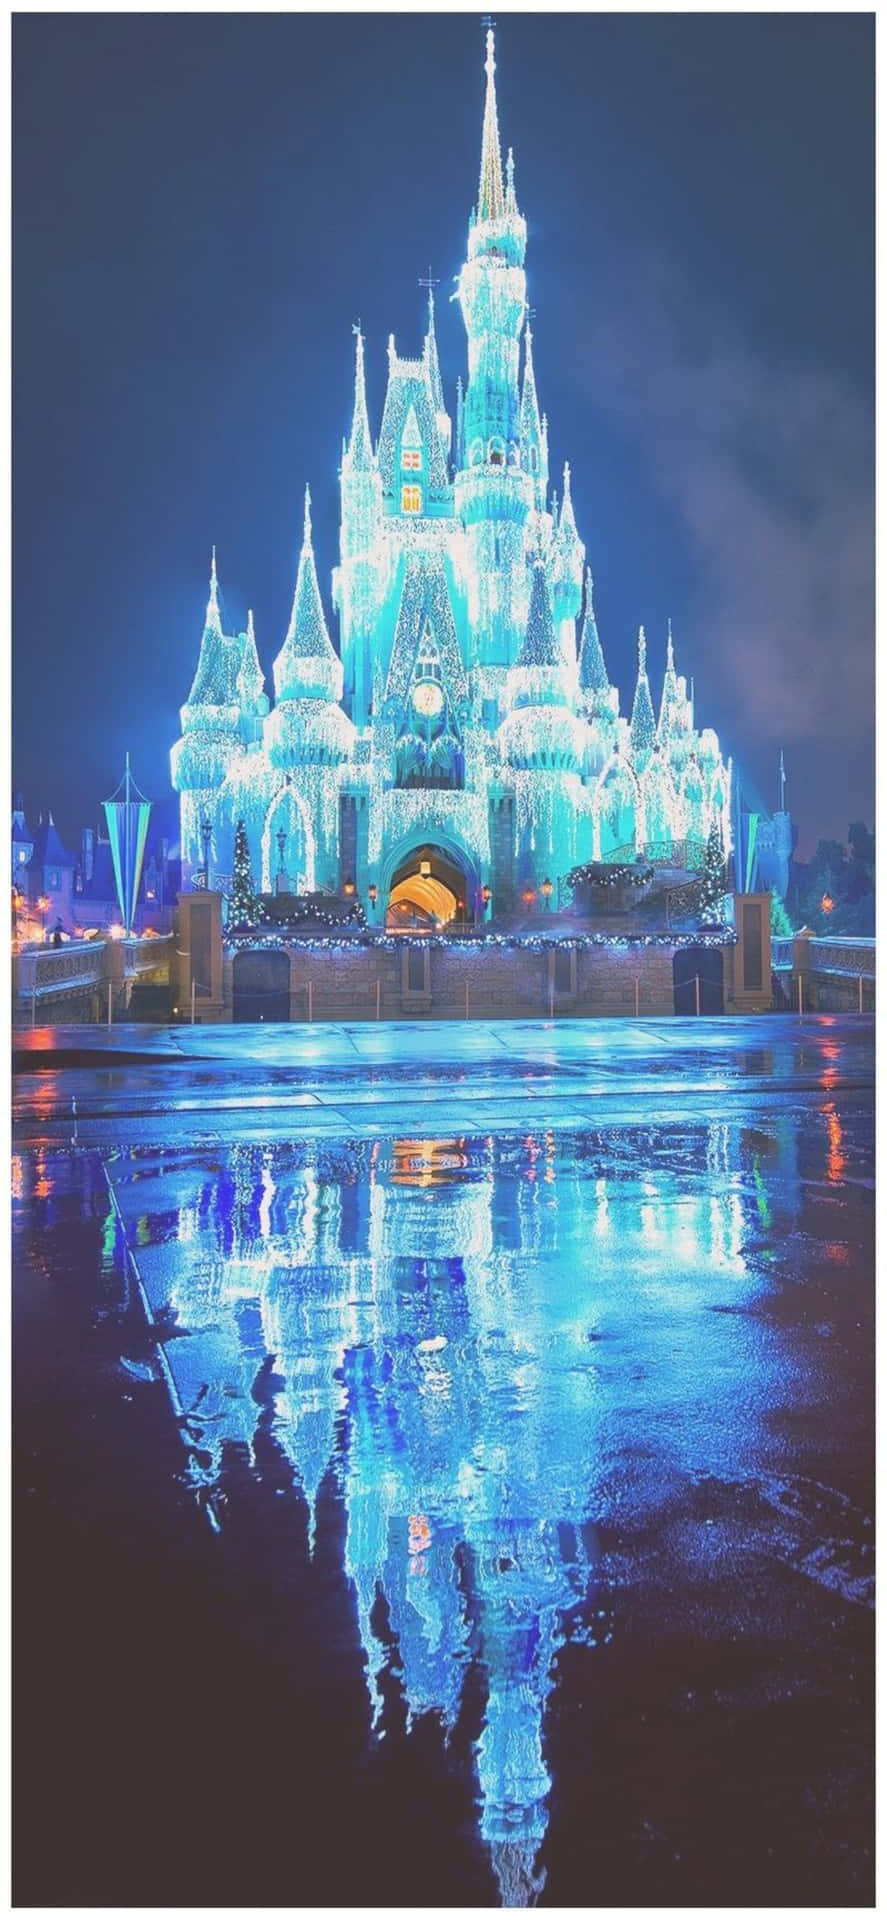 Iphone X Disney Background Castle Shining